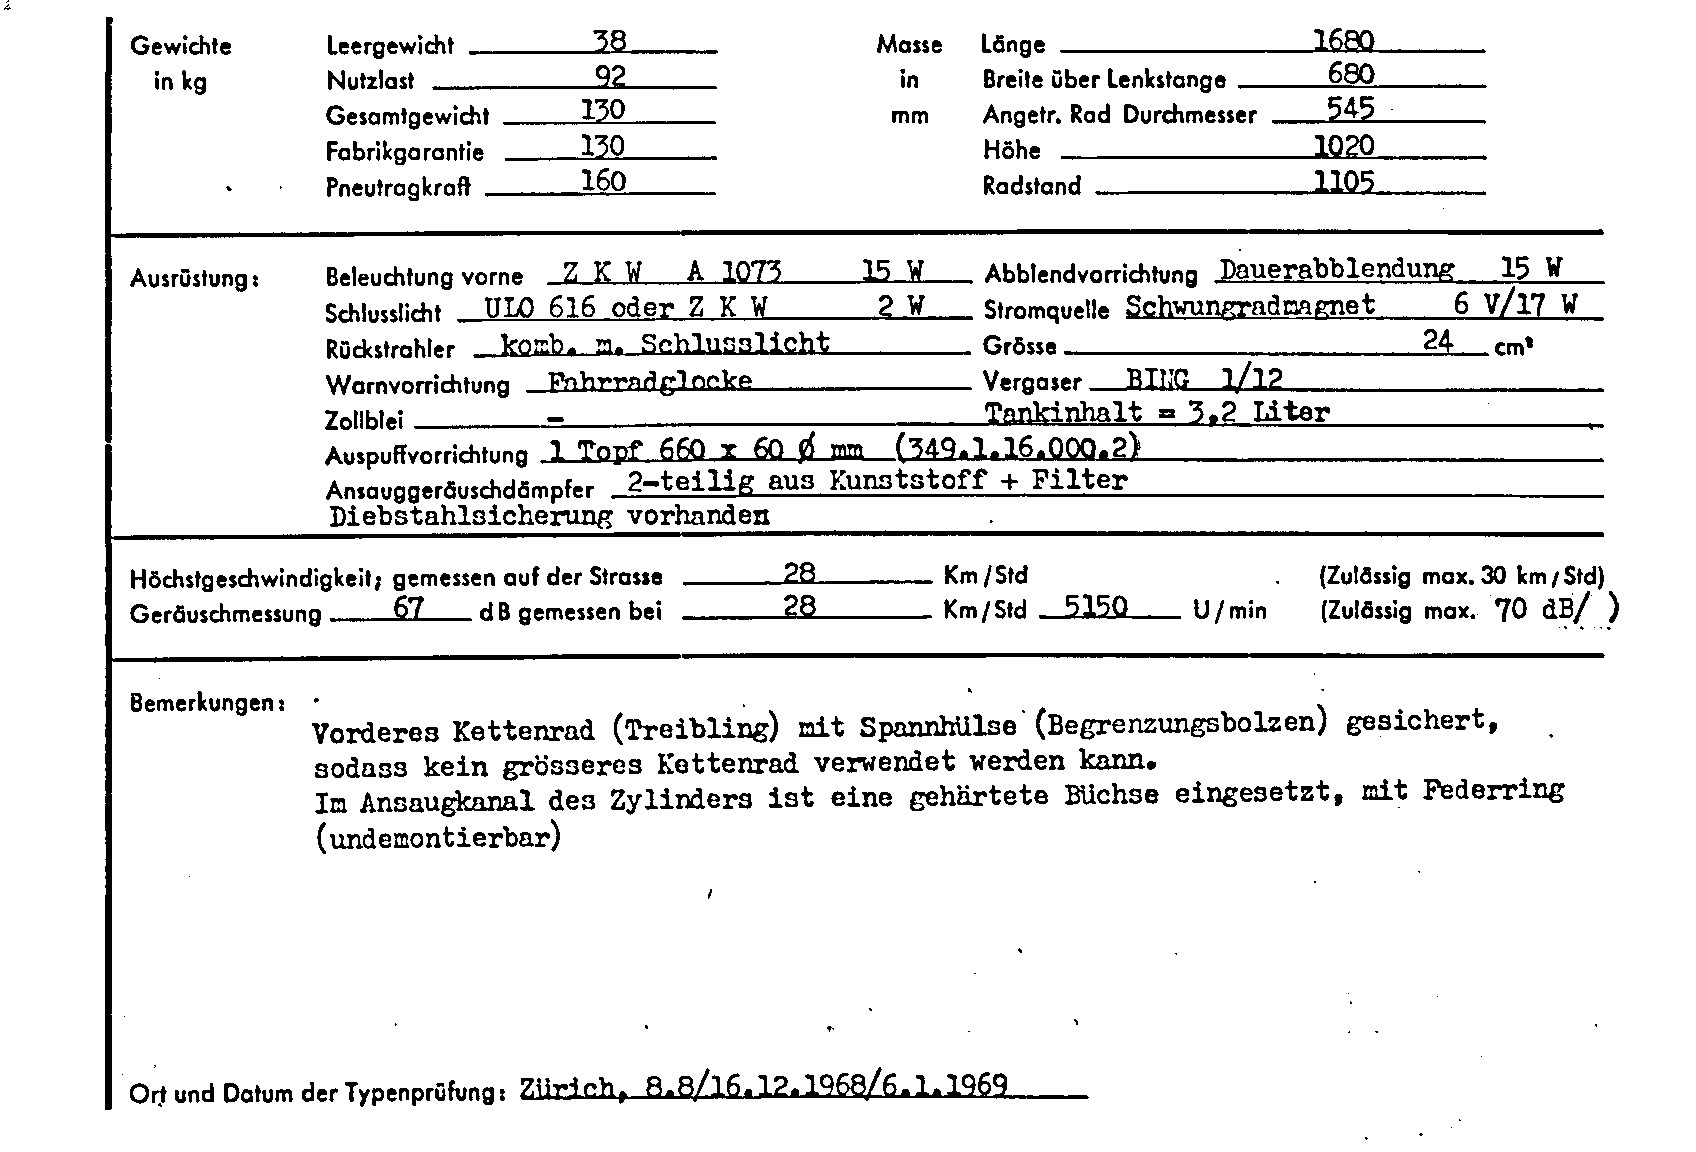 Swiss Certificate of Conformity 7029 German Page 2 (TG.DE.7029.2.png)